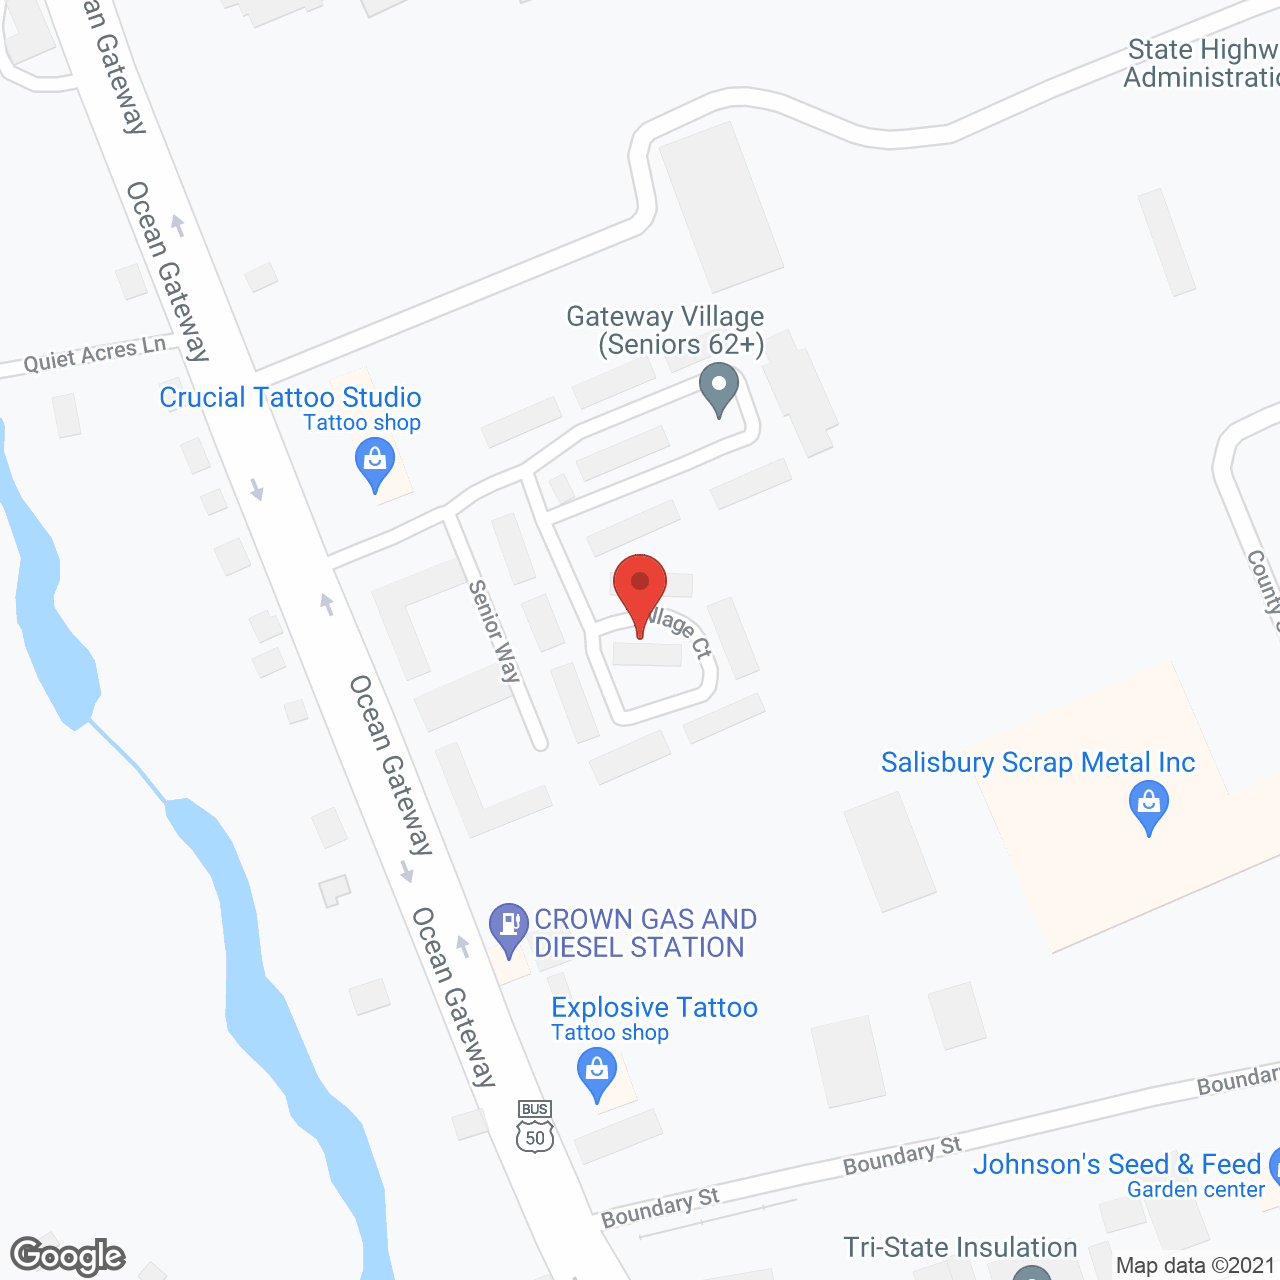 Gateway Village in google map